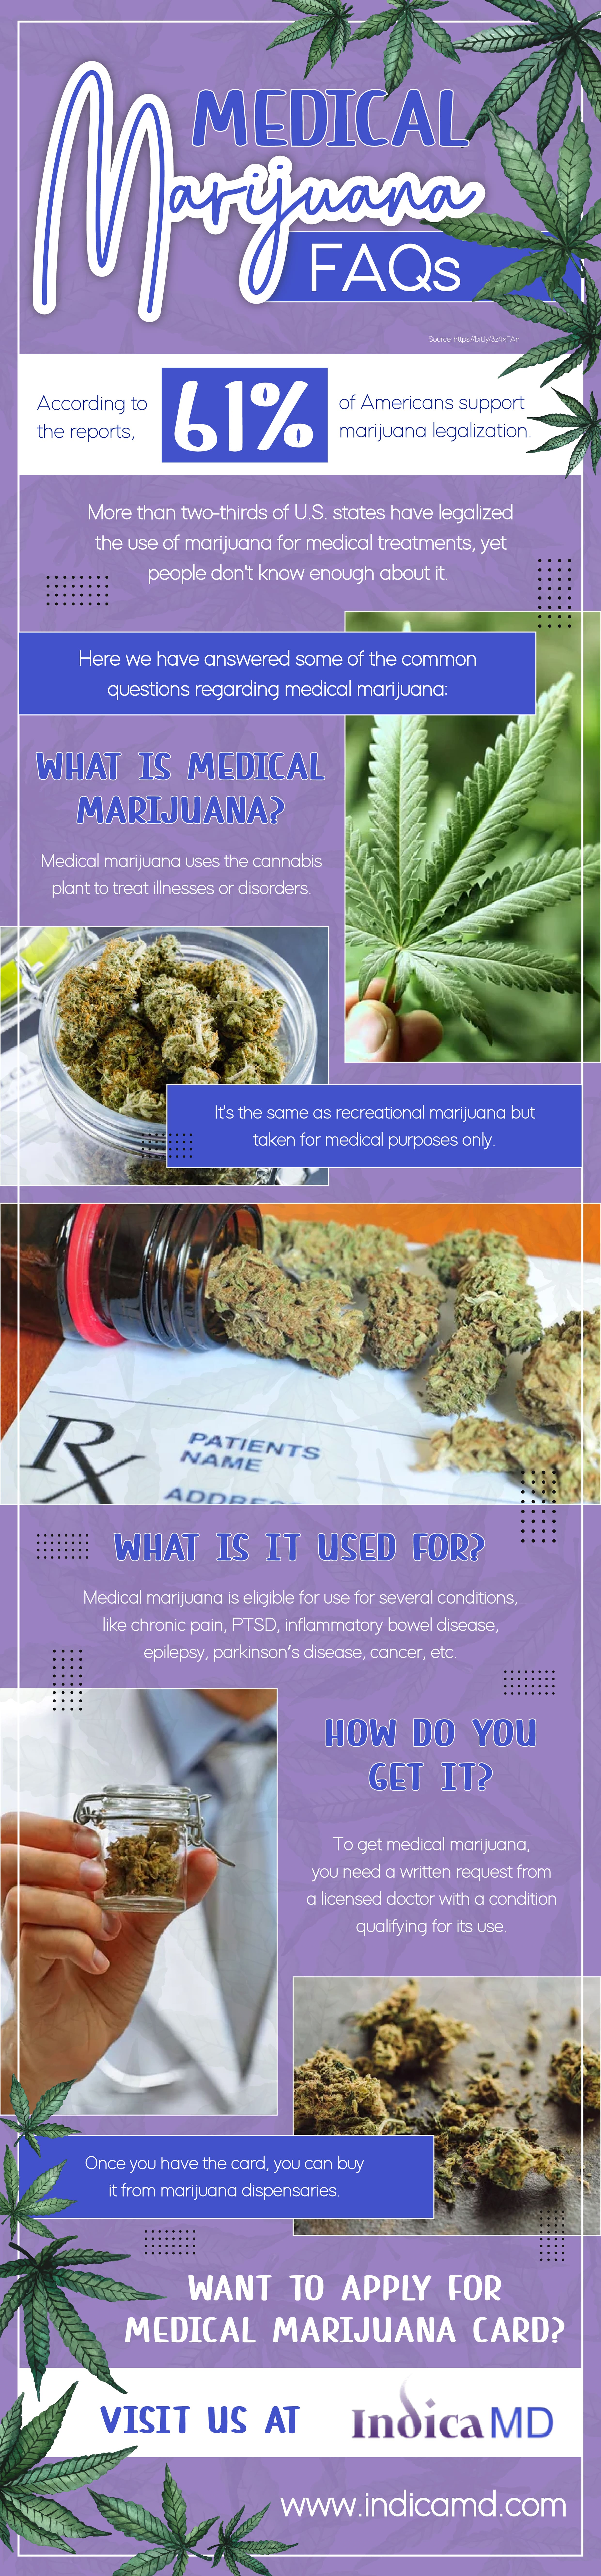 Medical marijuana FAQs